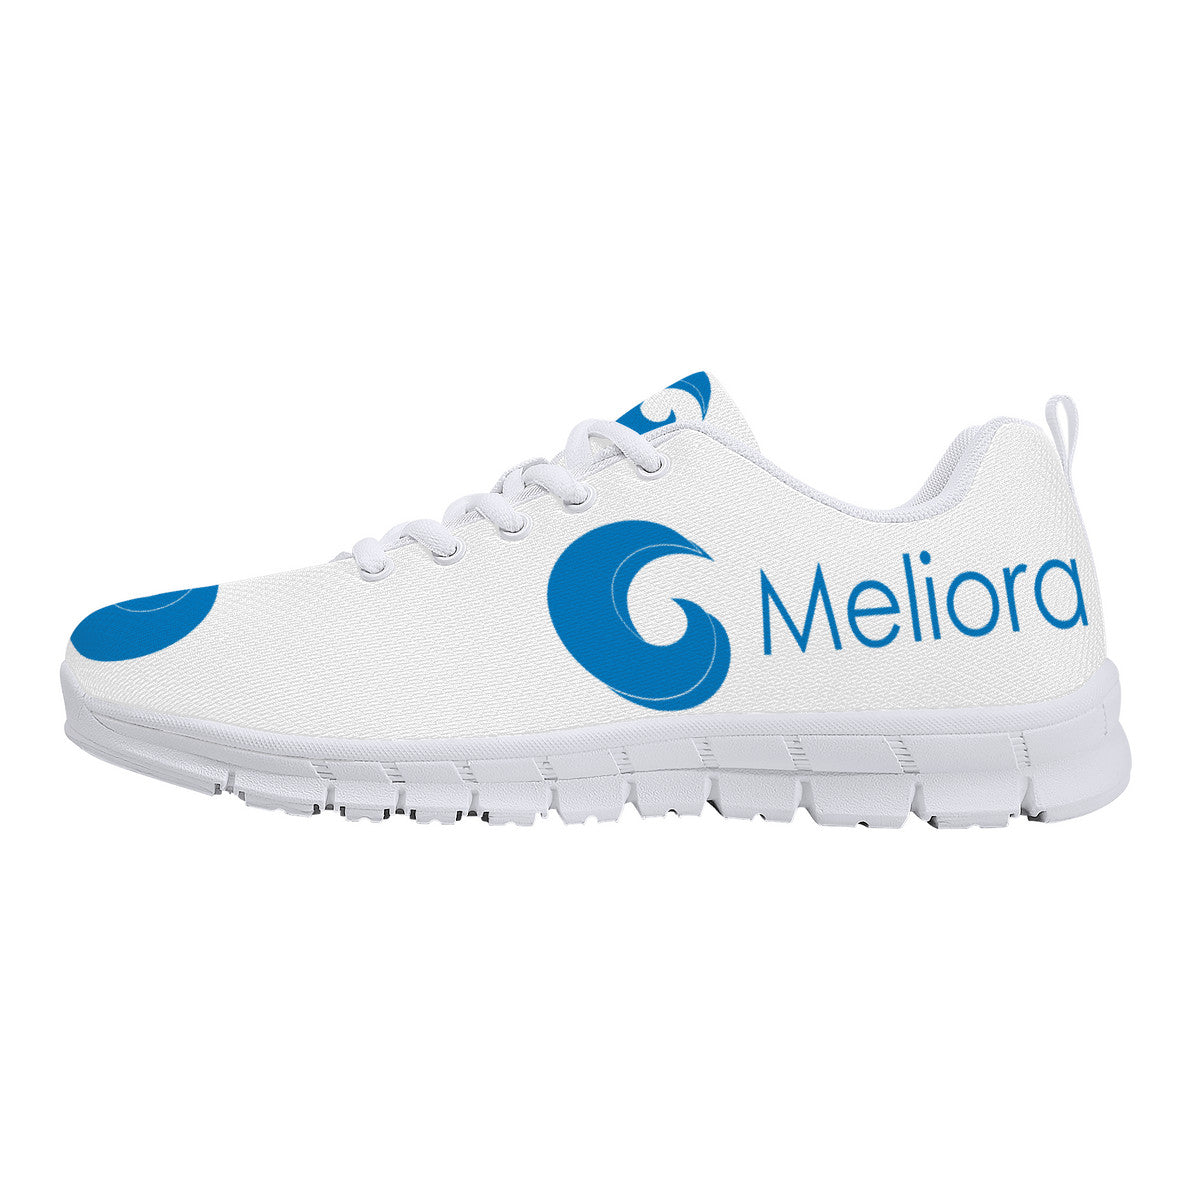 Meliora Medtech Designed Shoes V1 | Running Sneakers - White - Shoe Zero